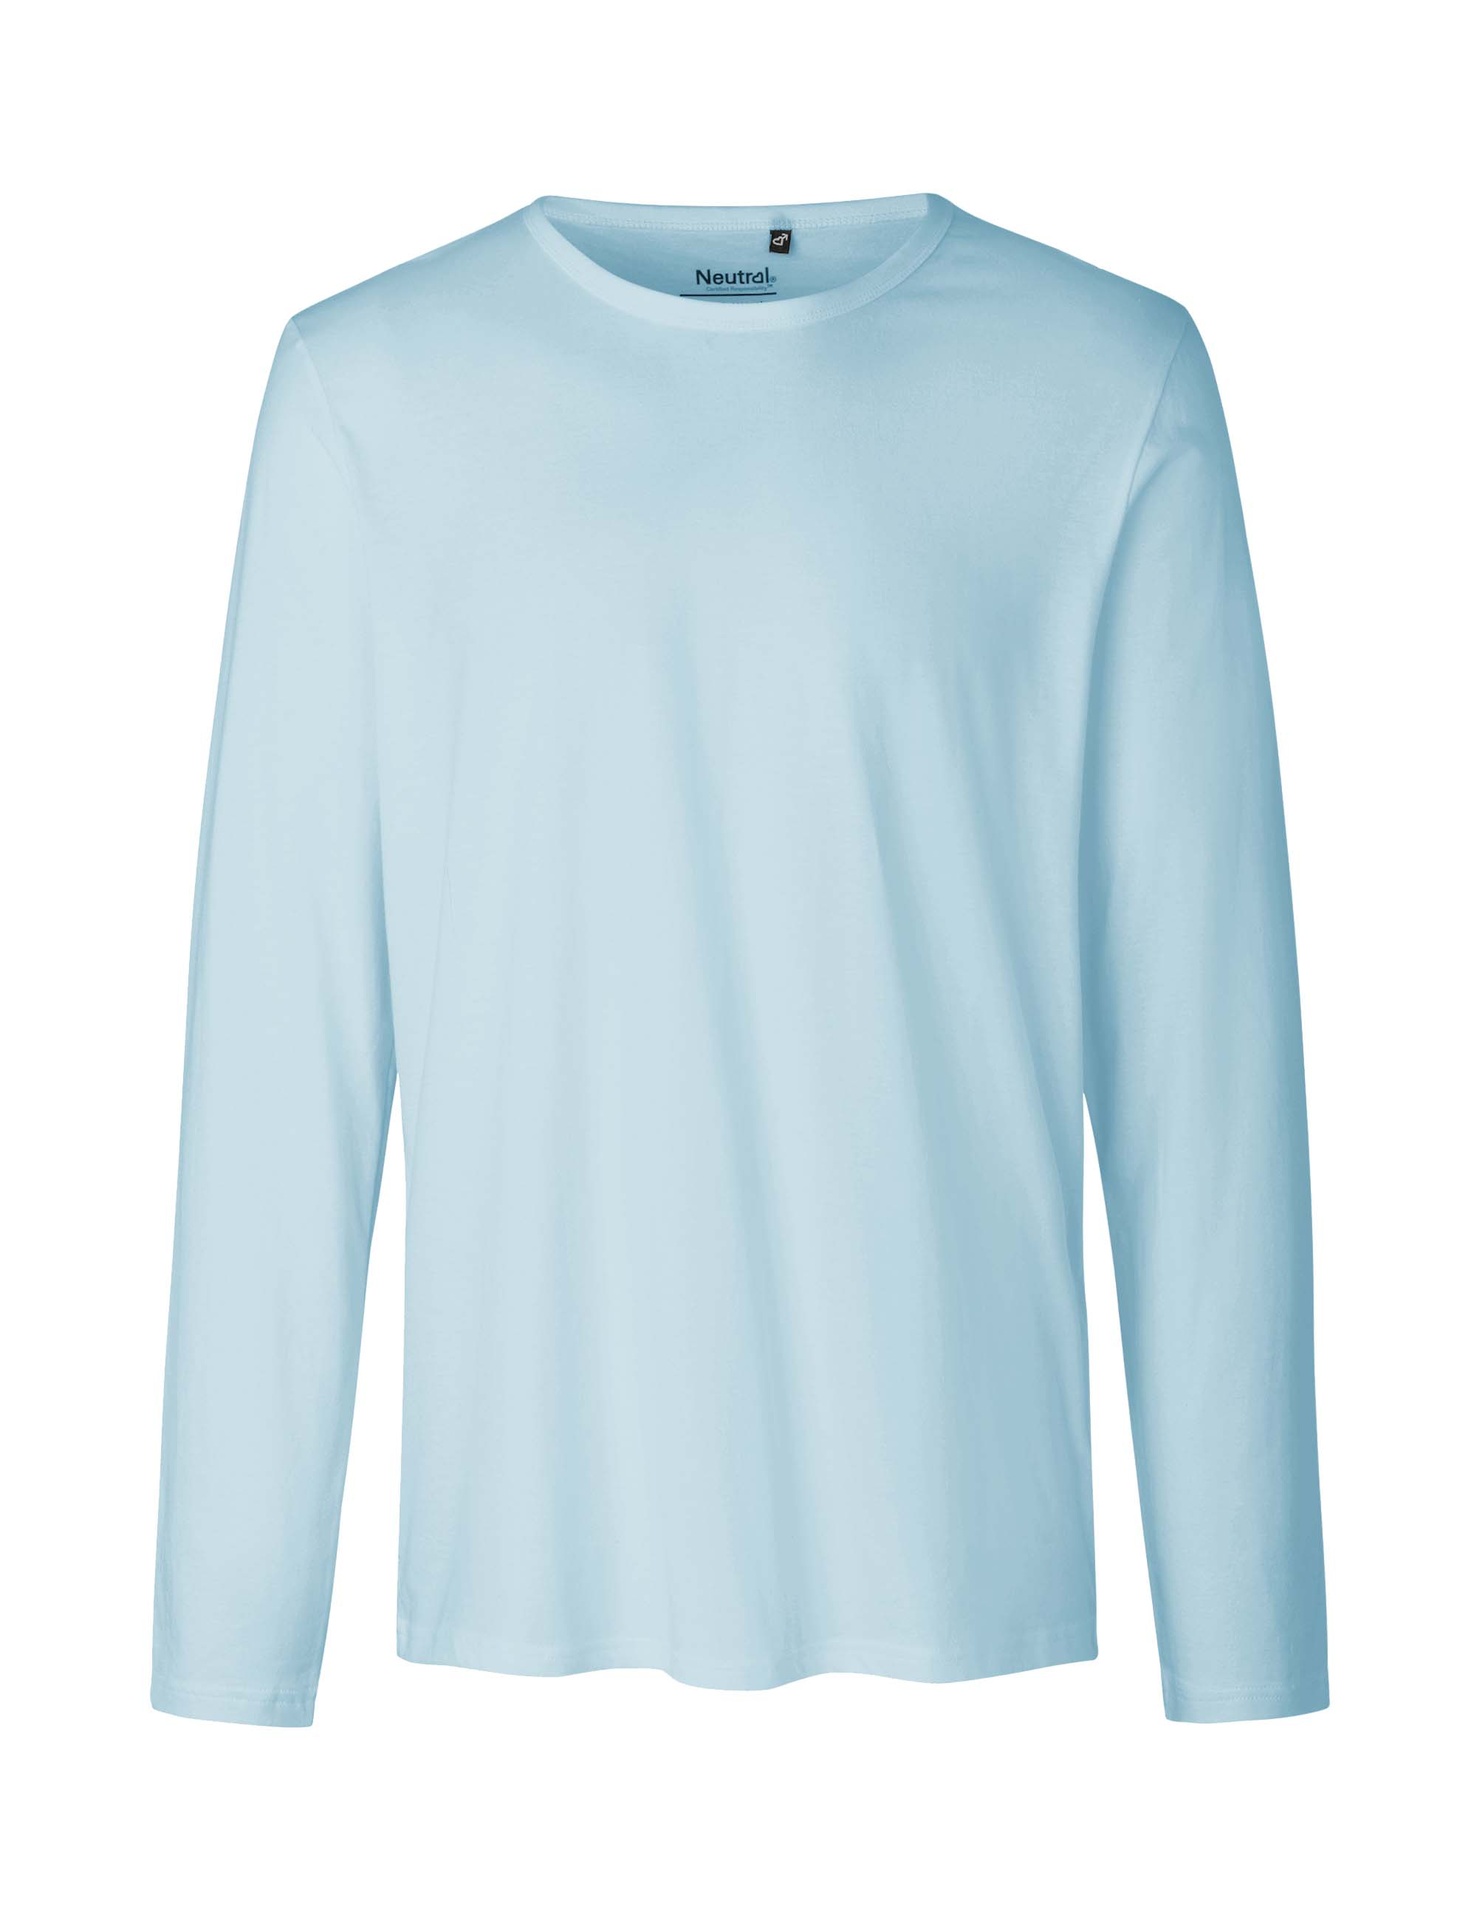 [PR/02462] Mens Long Sleeve T-Shirt (Light Blue 69, 2XL)